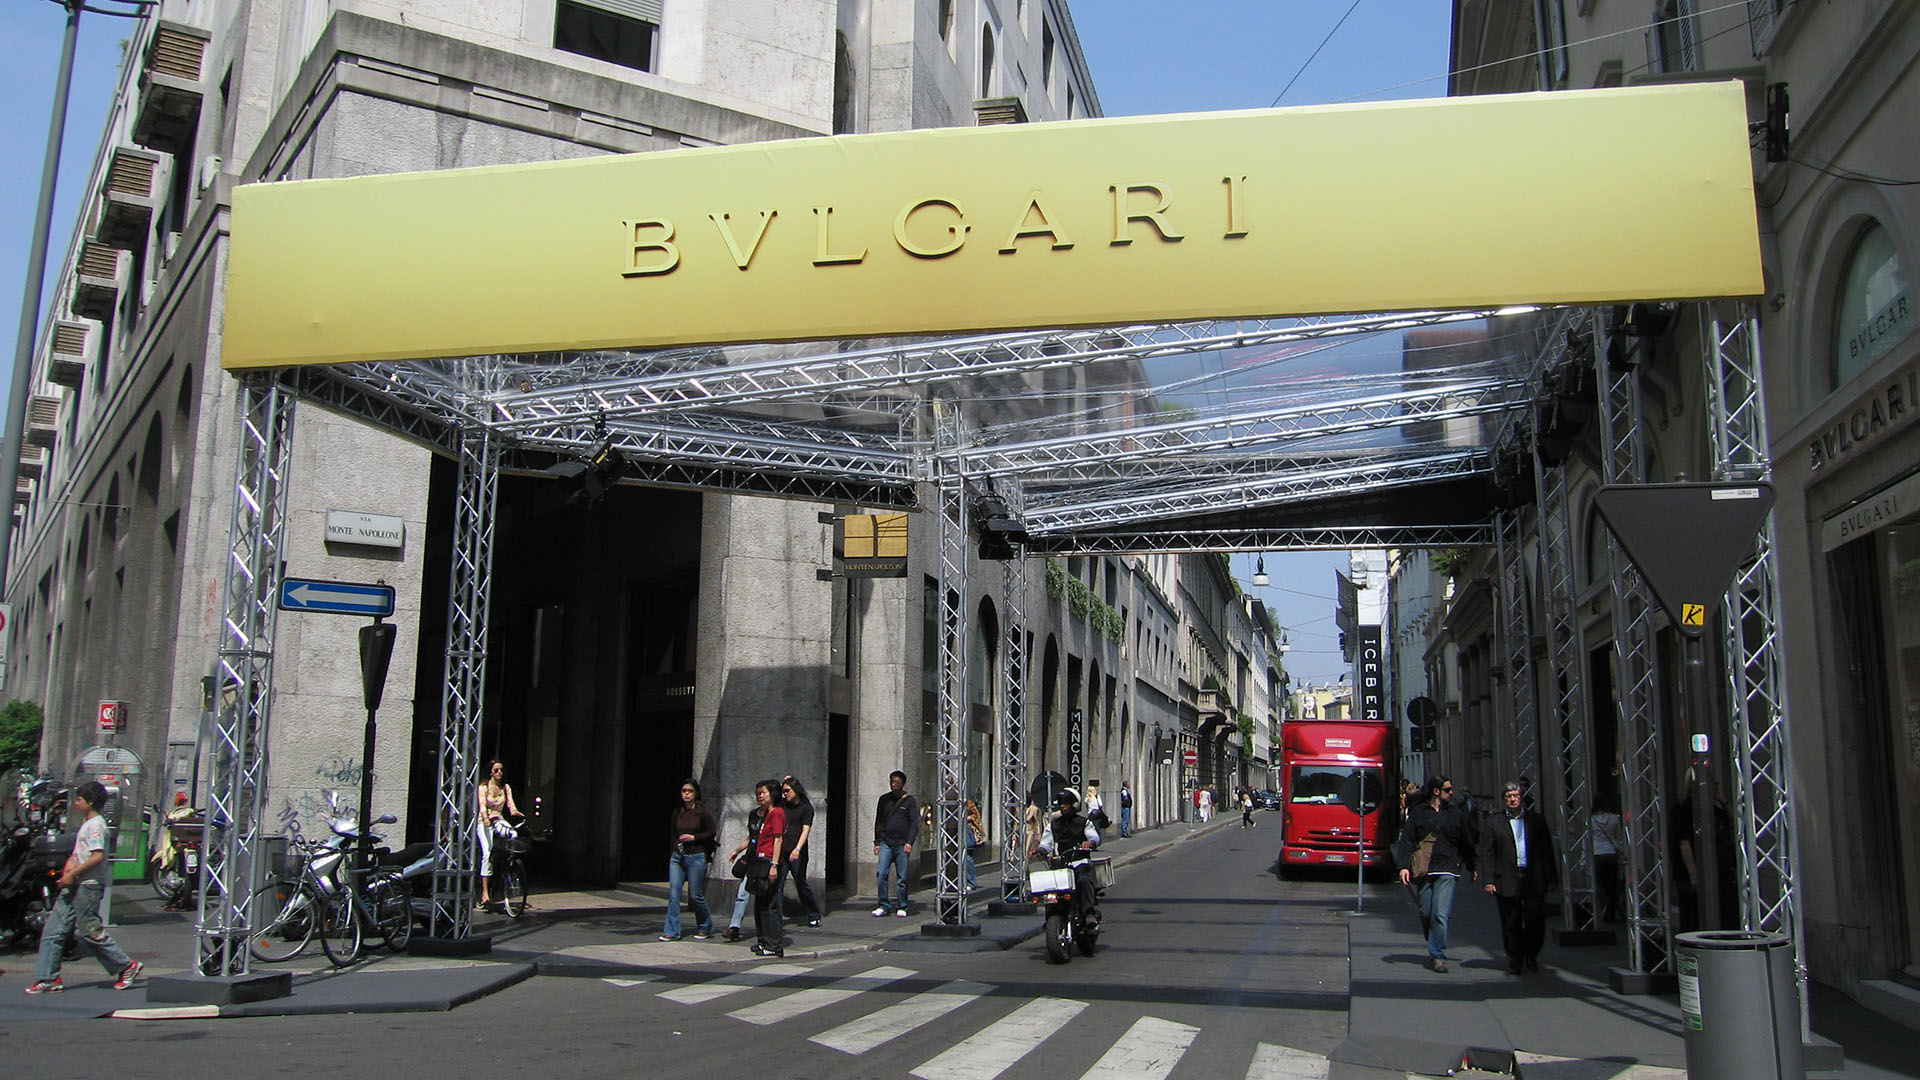 Struttura realizzata con americane per evento di moda a Milano